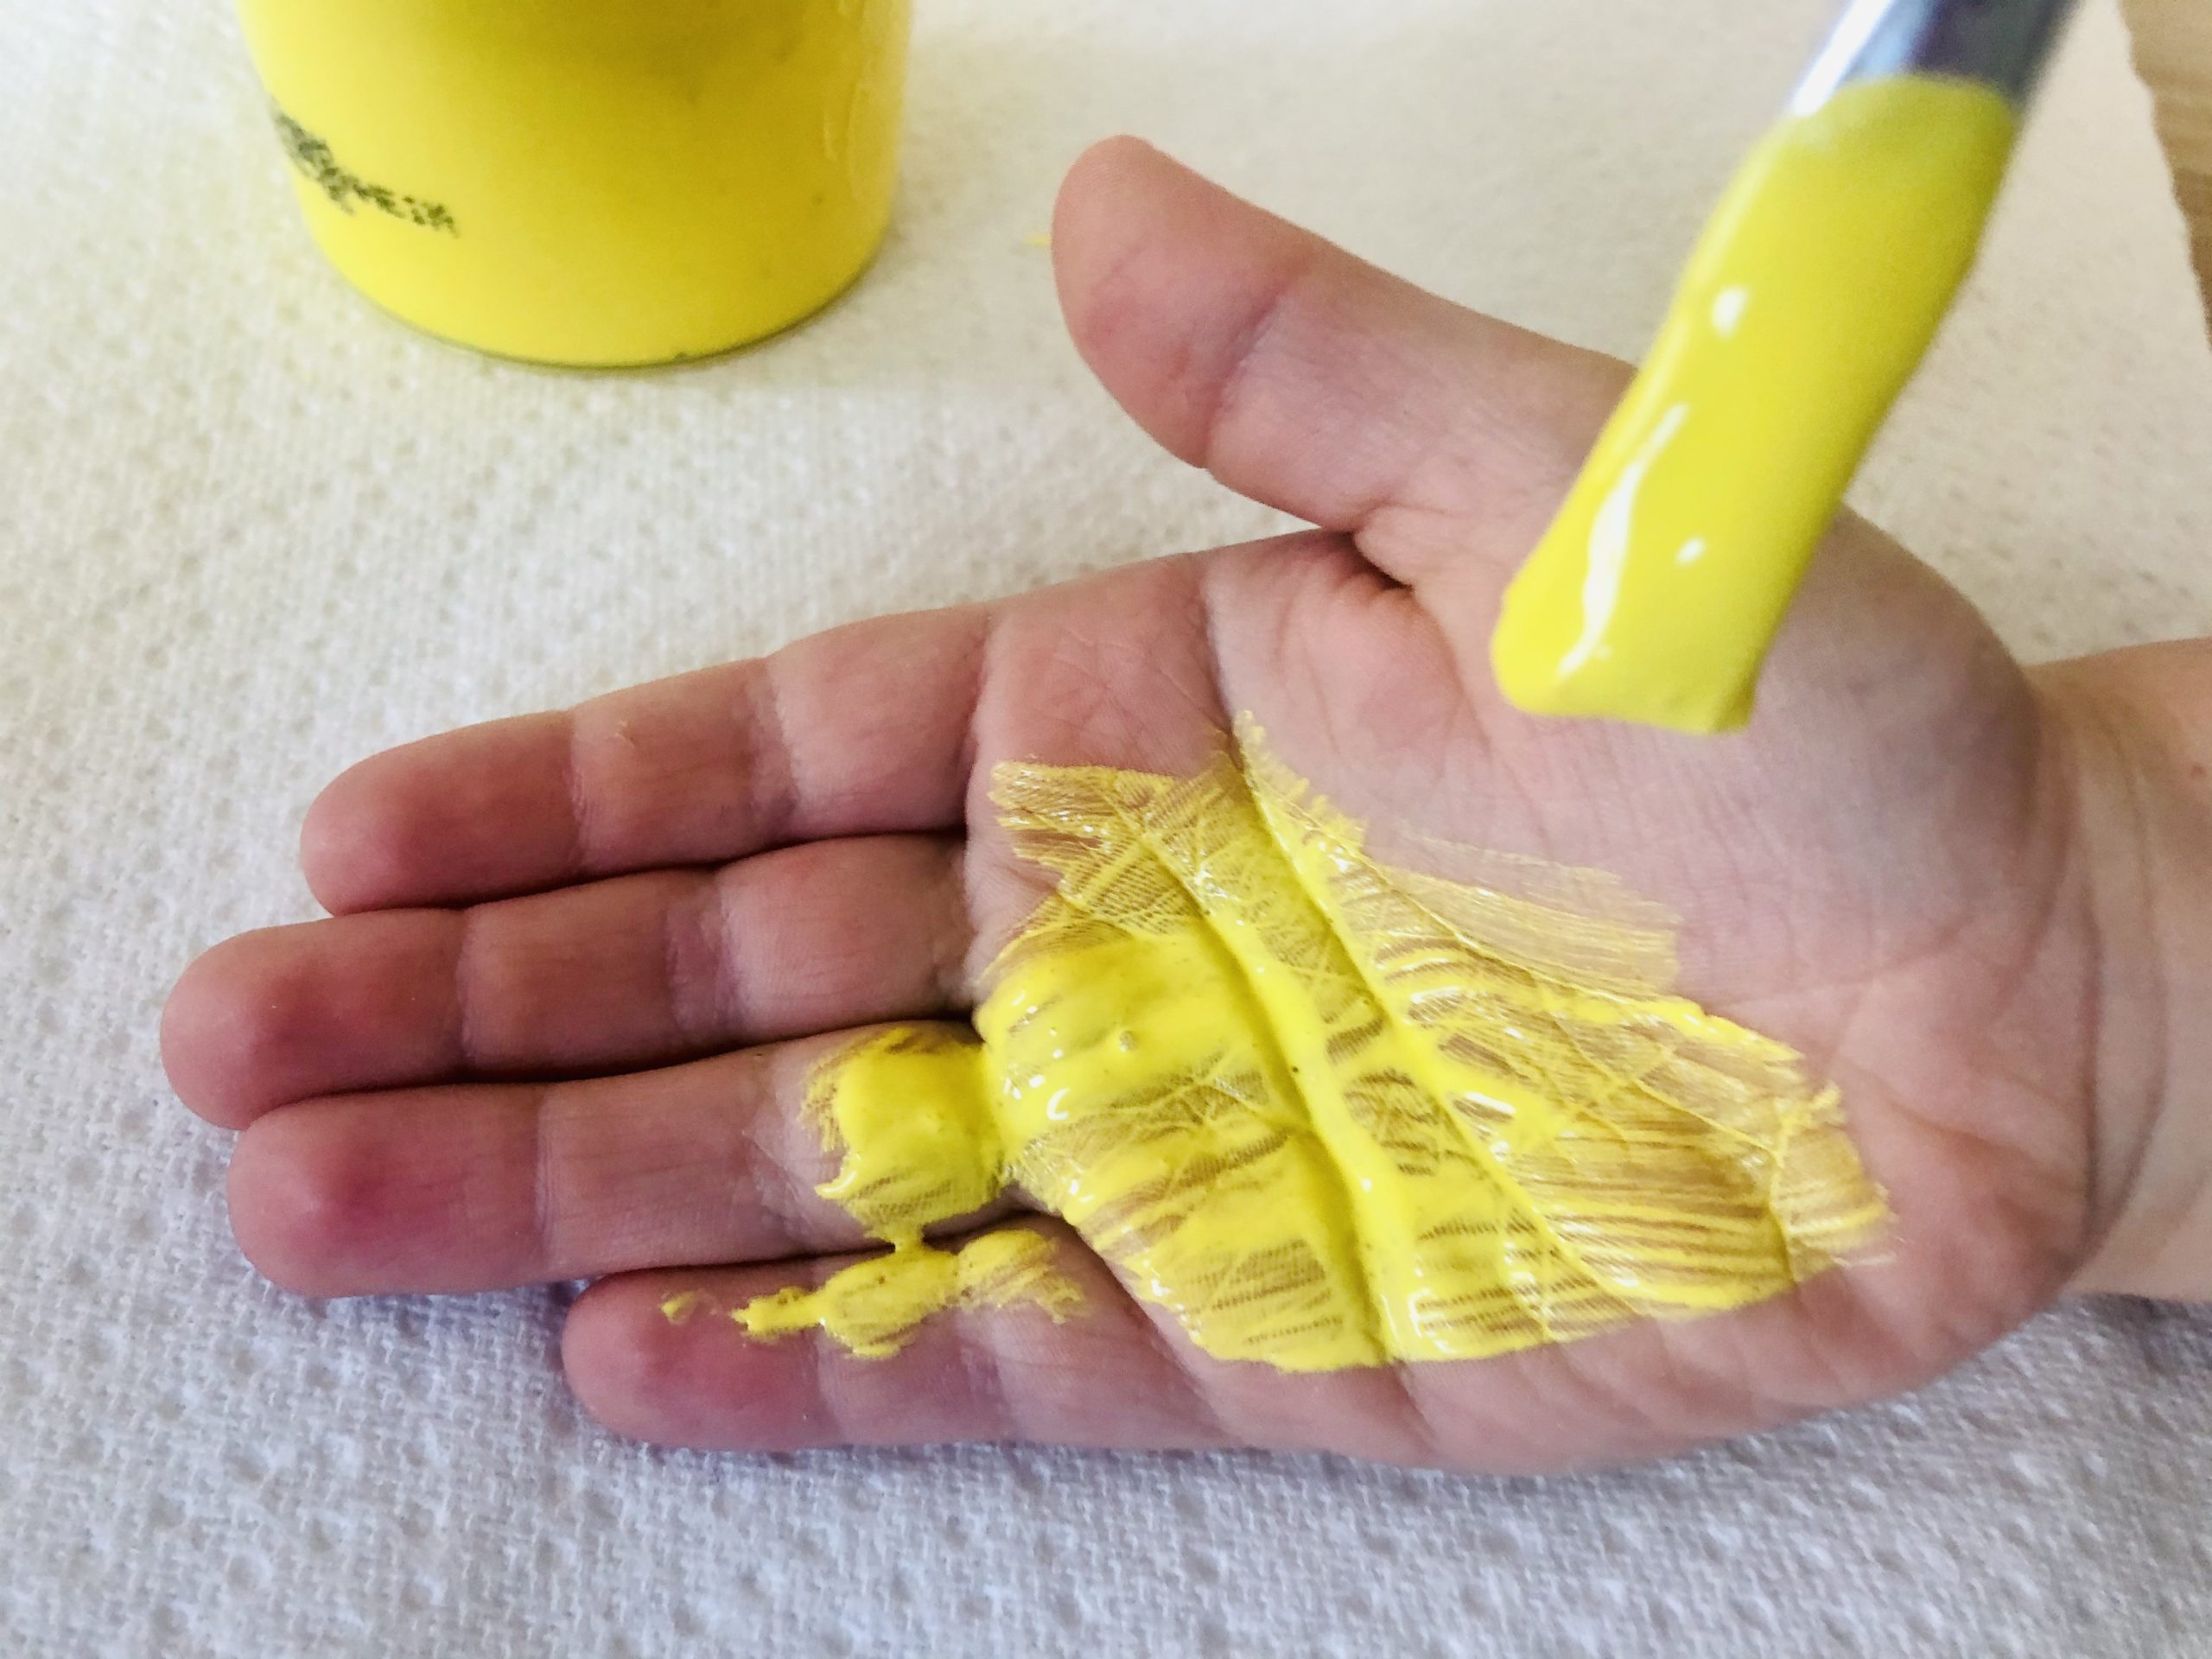 Bild zum Schritt 2 für die Kinder-Beschäftigung: 'Dann beginnt ihr mit dem Pinsel gelbe Fingerfarbe auf eine...'